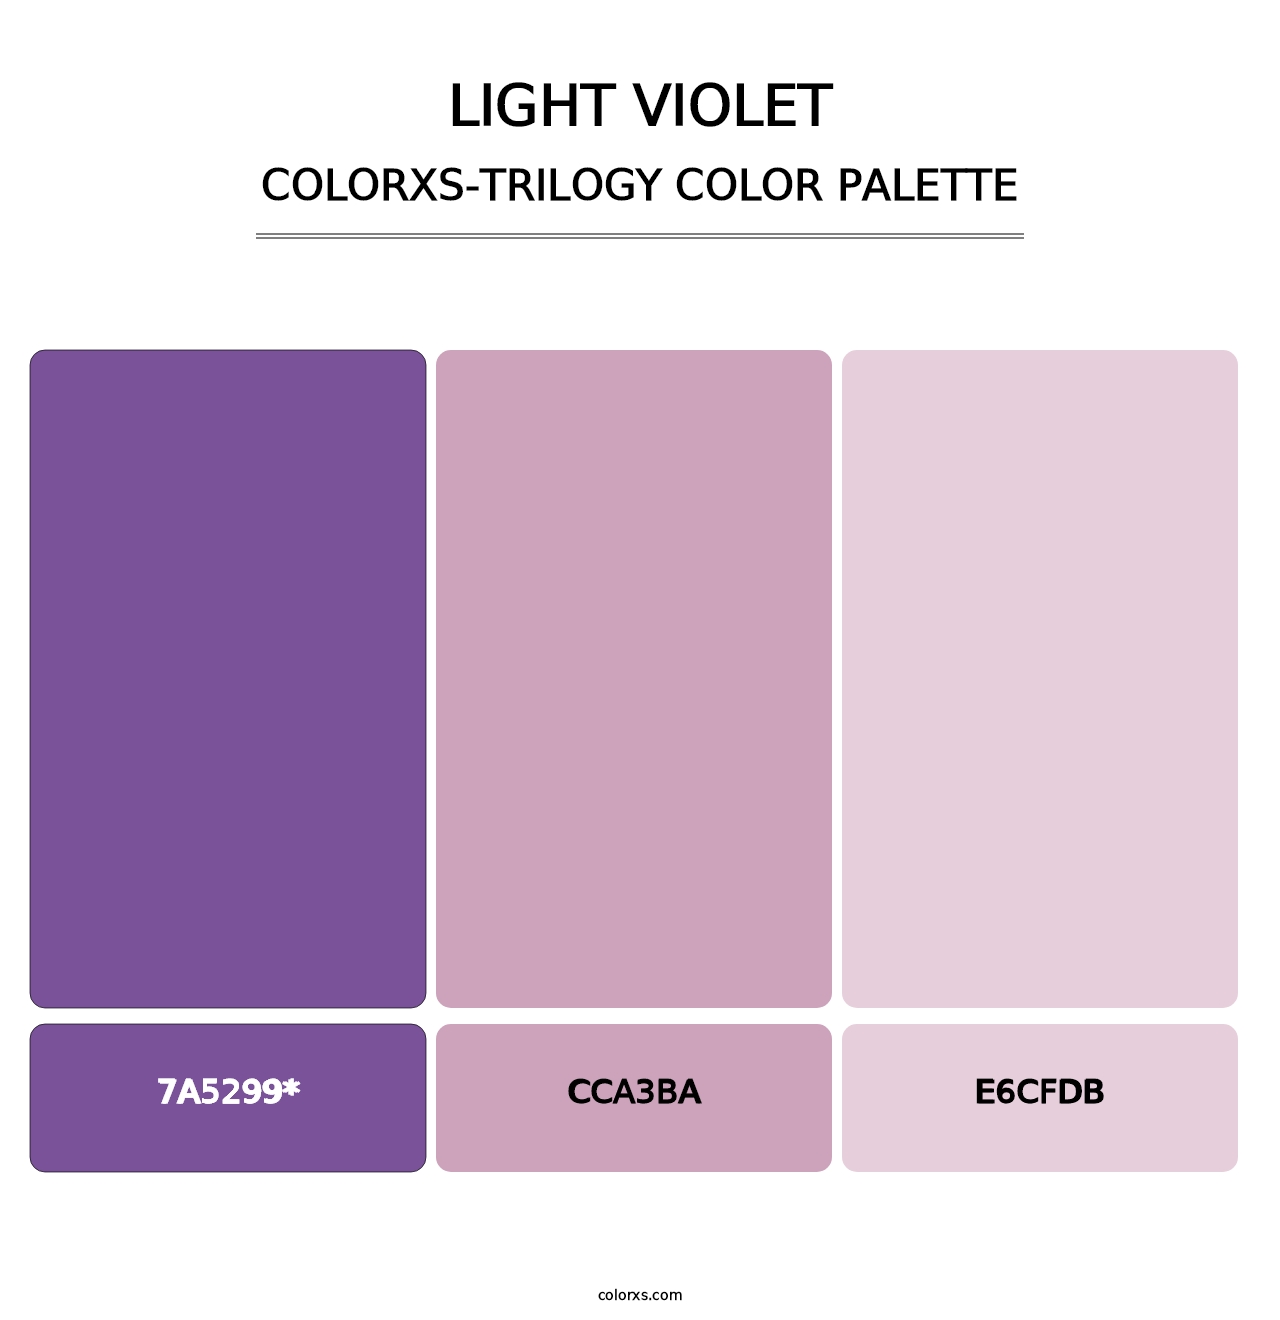 Light Violet - Colorxs Trilogy Palette